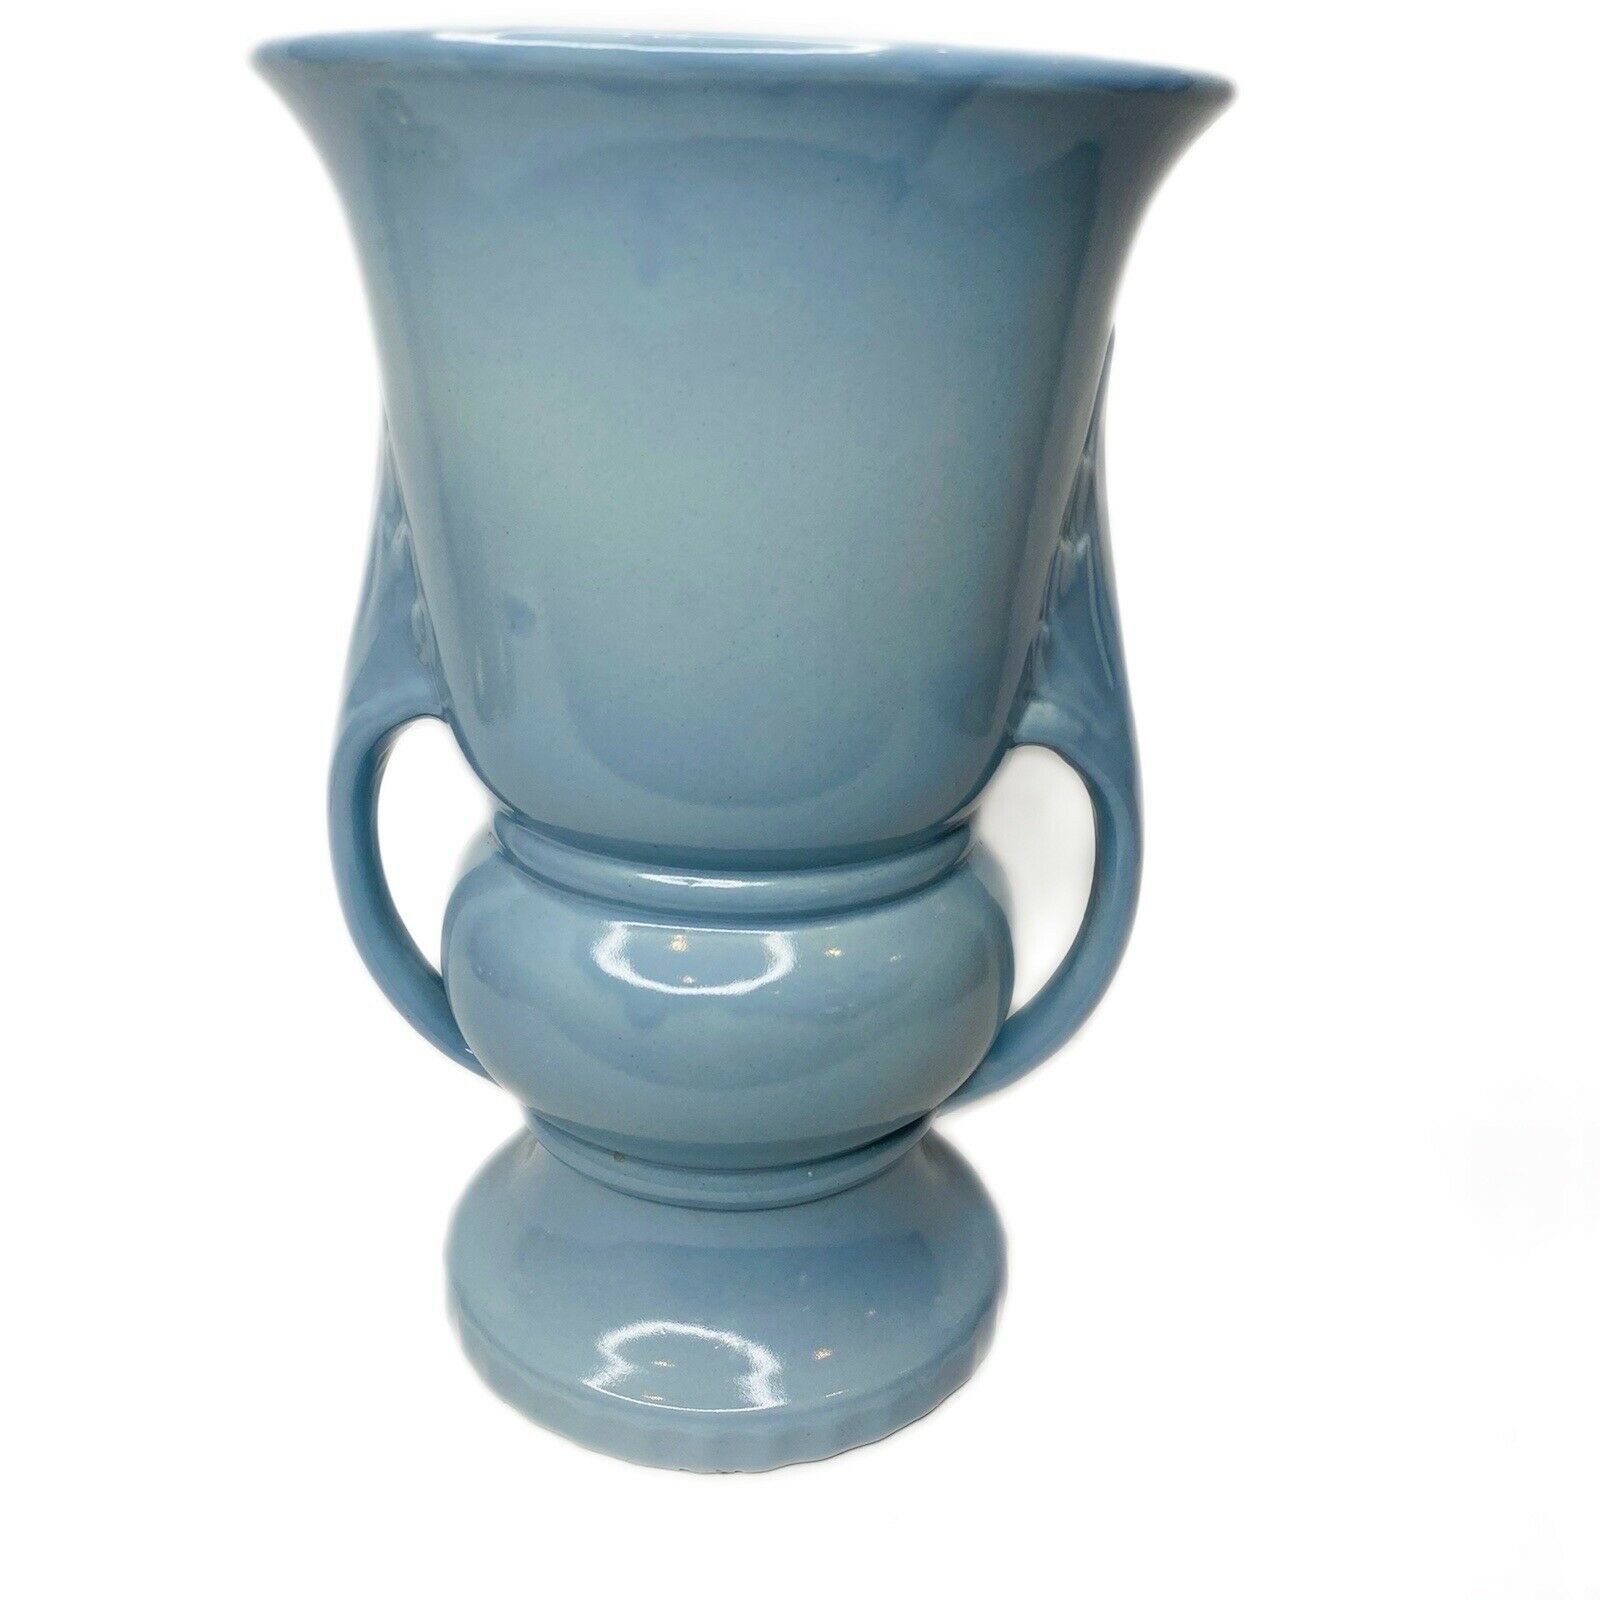 Vintage Abington Pottery Large 10” Double Handle Vase Art Deco Blue